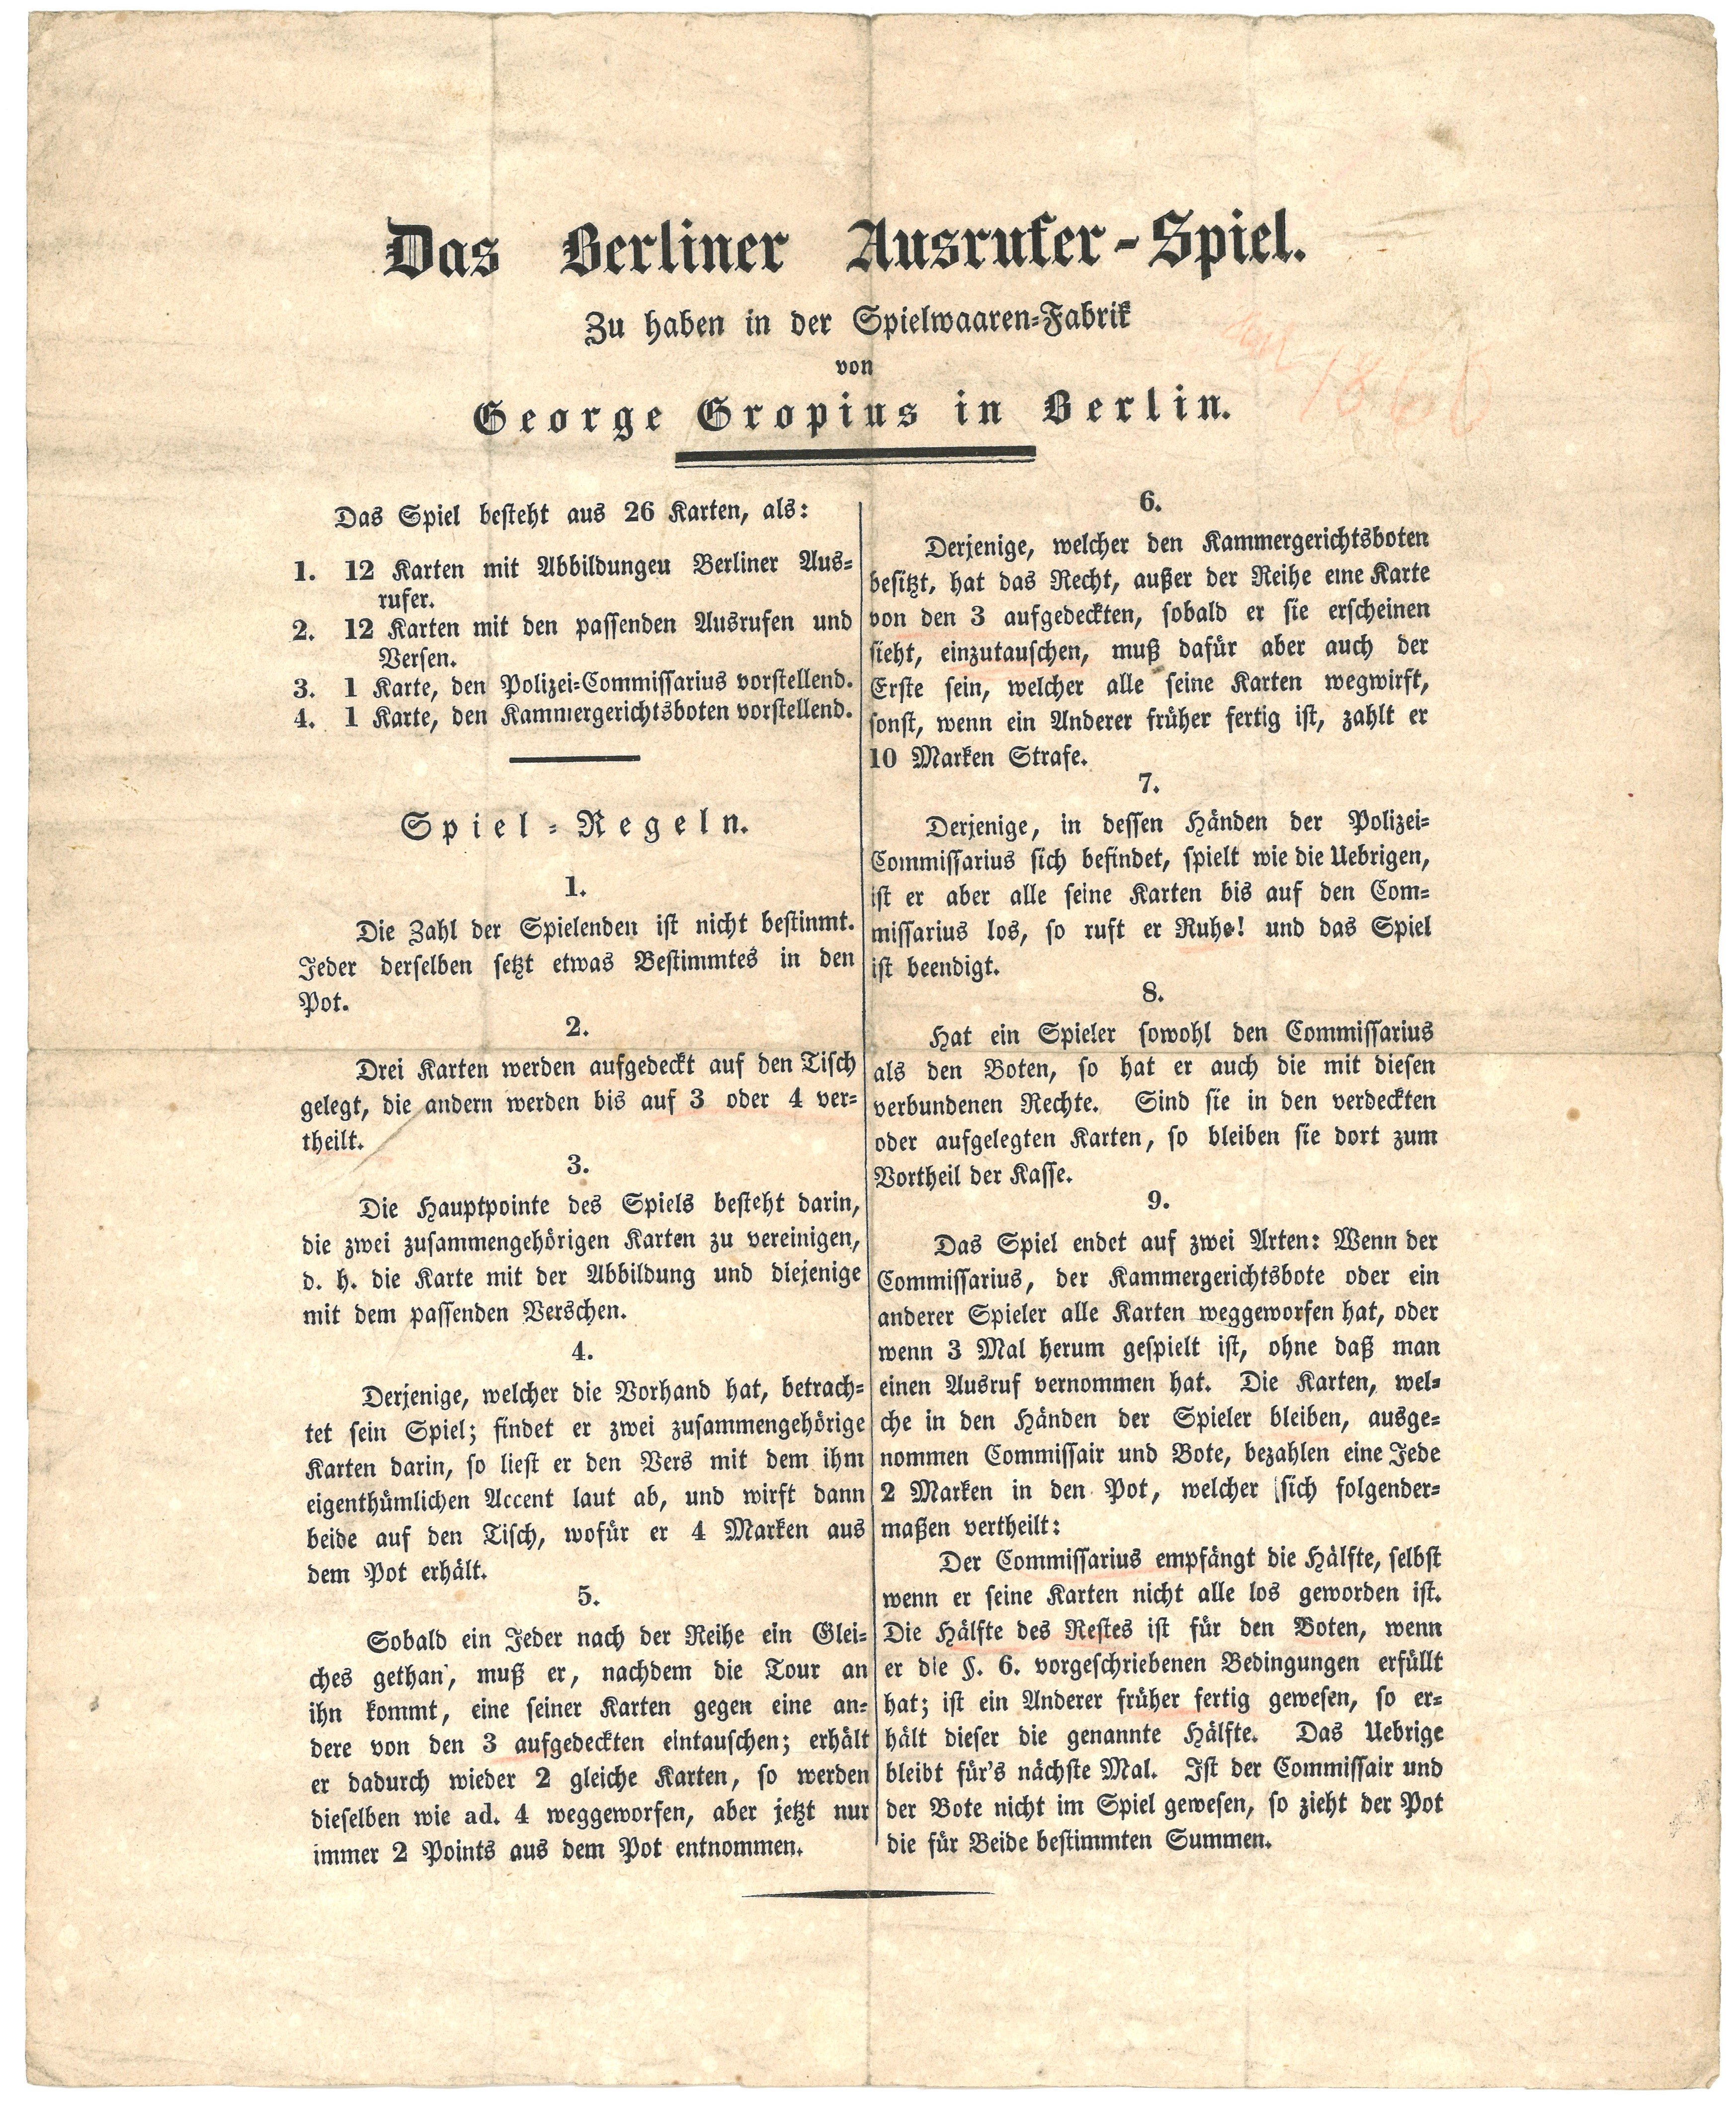 Spielregeln für das Berliner Ausrufer-Spiel (ca. 1840) (Landesgeschichtliche Vereinigung für die Mark Brandenburg e.V., Archiv CC BY)